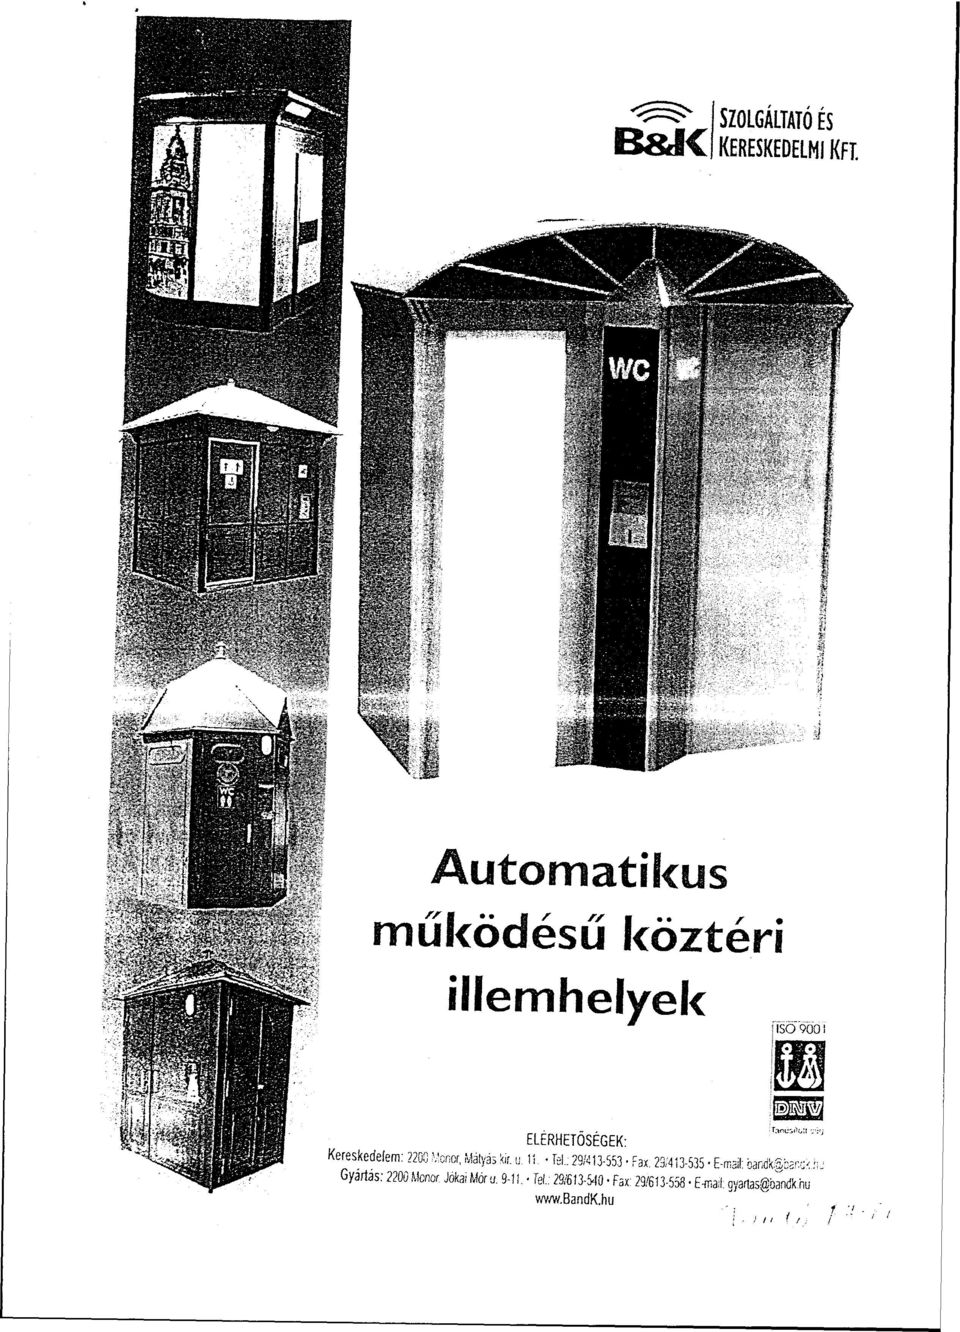 Monor, Mátyás kir. u. 11. - Tel.: 29/413-553 Fax. 23/413-535 E-mar bandksb.